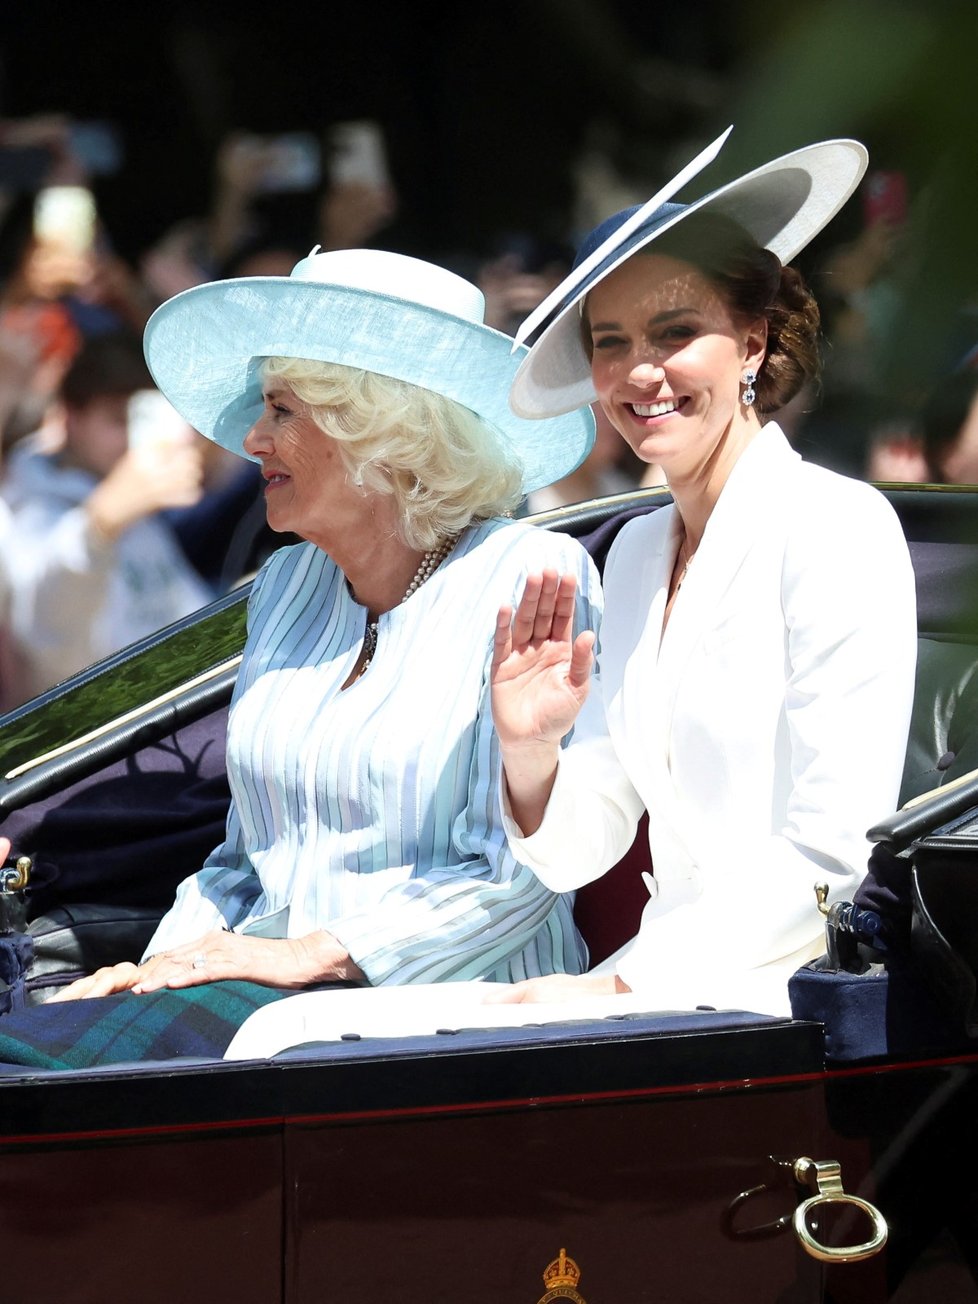 Oslavy královského jubilea: Camilla a vévodkyně Kate